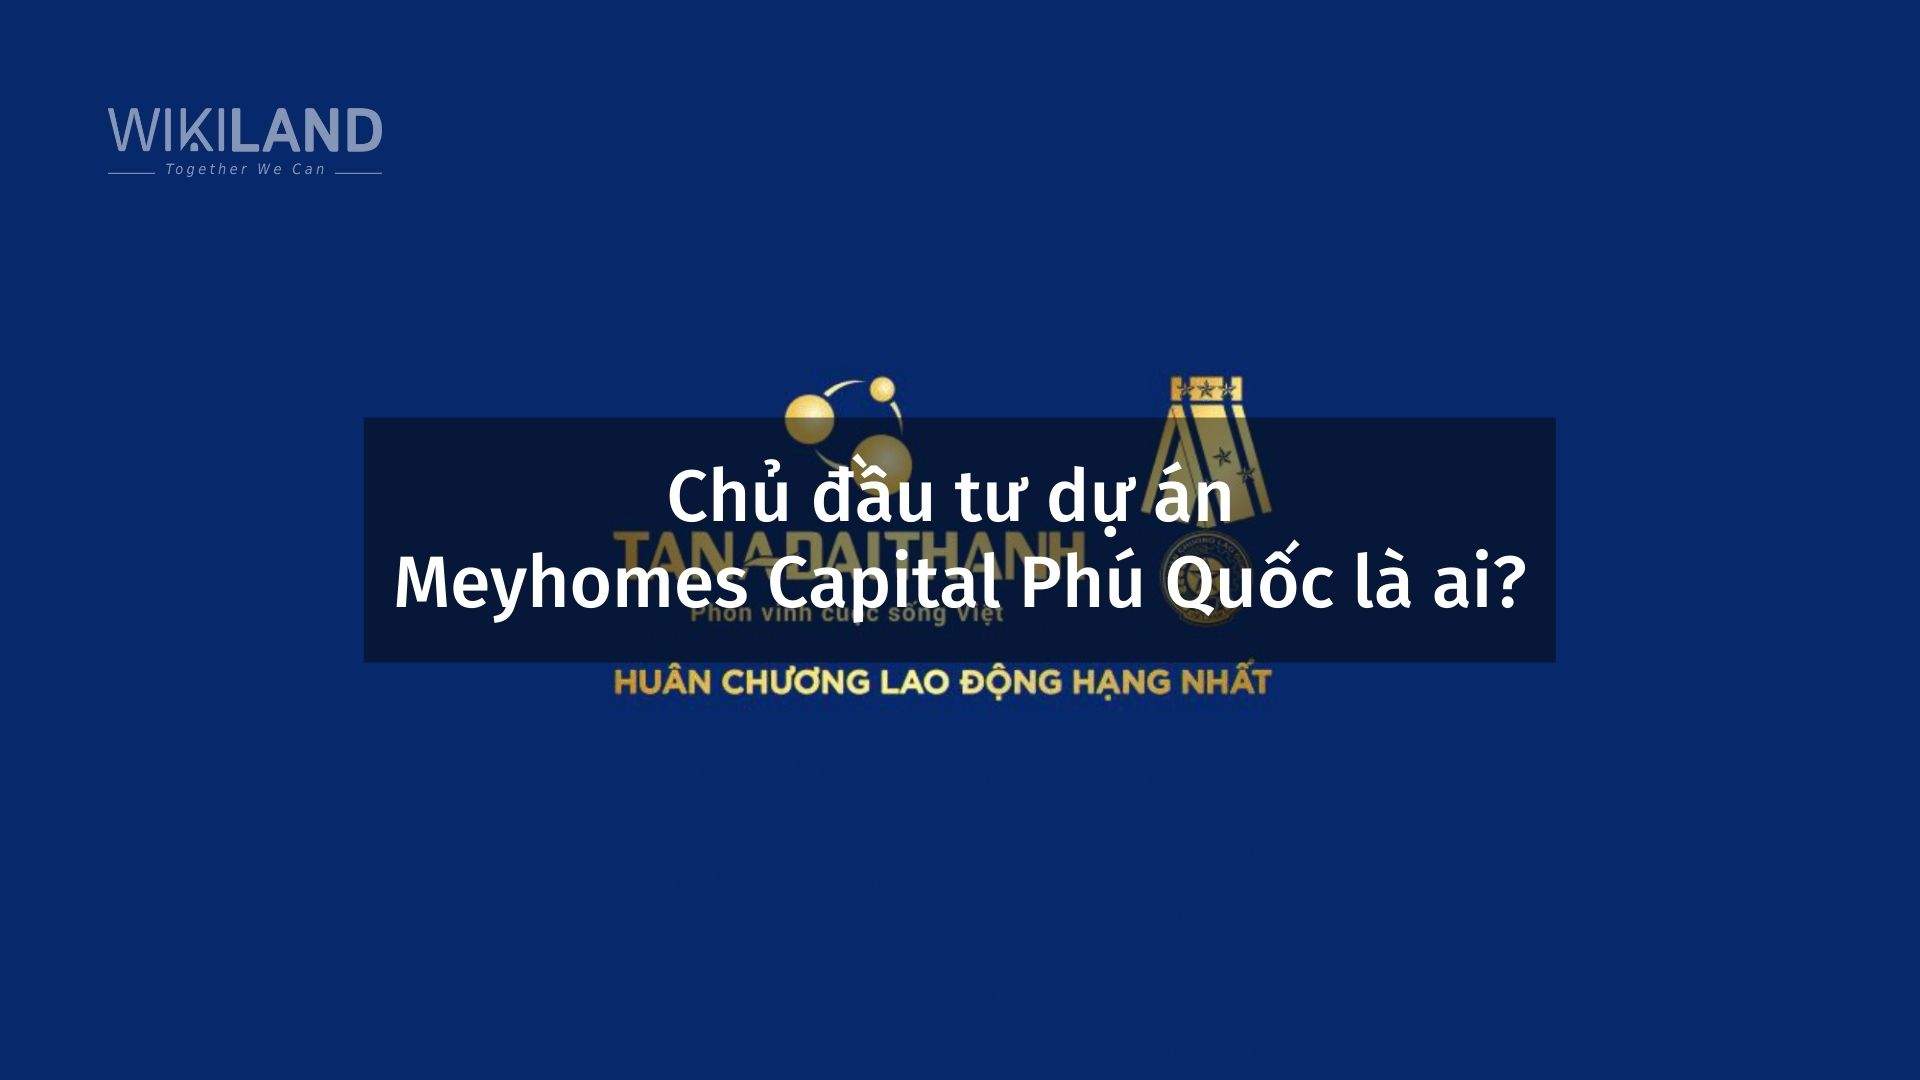 Chủ đầu tư dự án Meyhomes Capital Phú Quốc là ai?